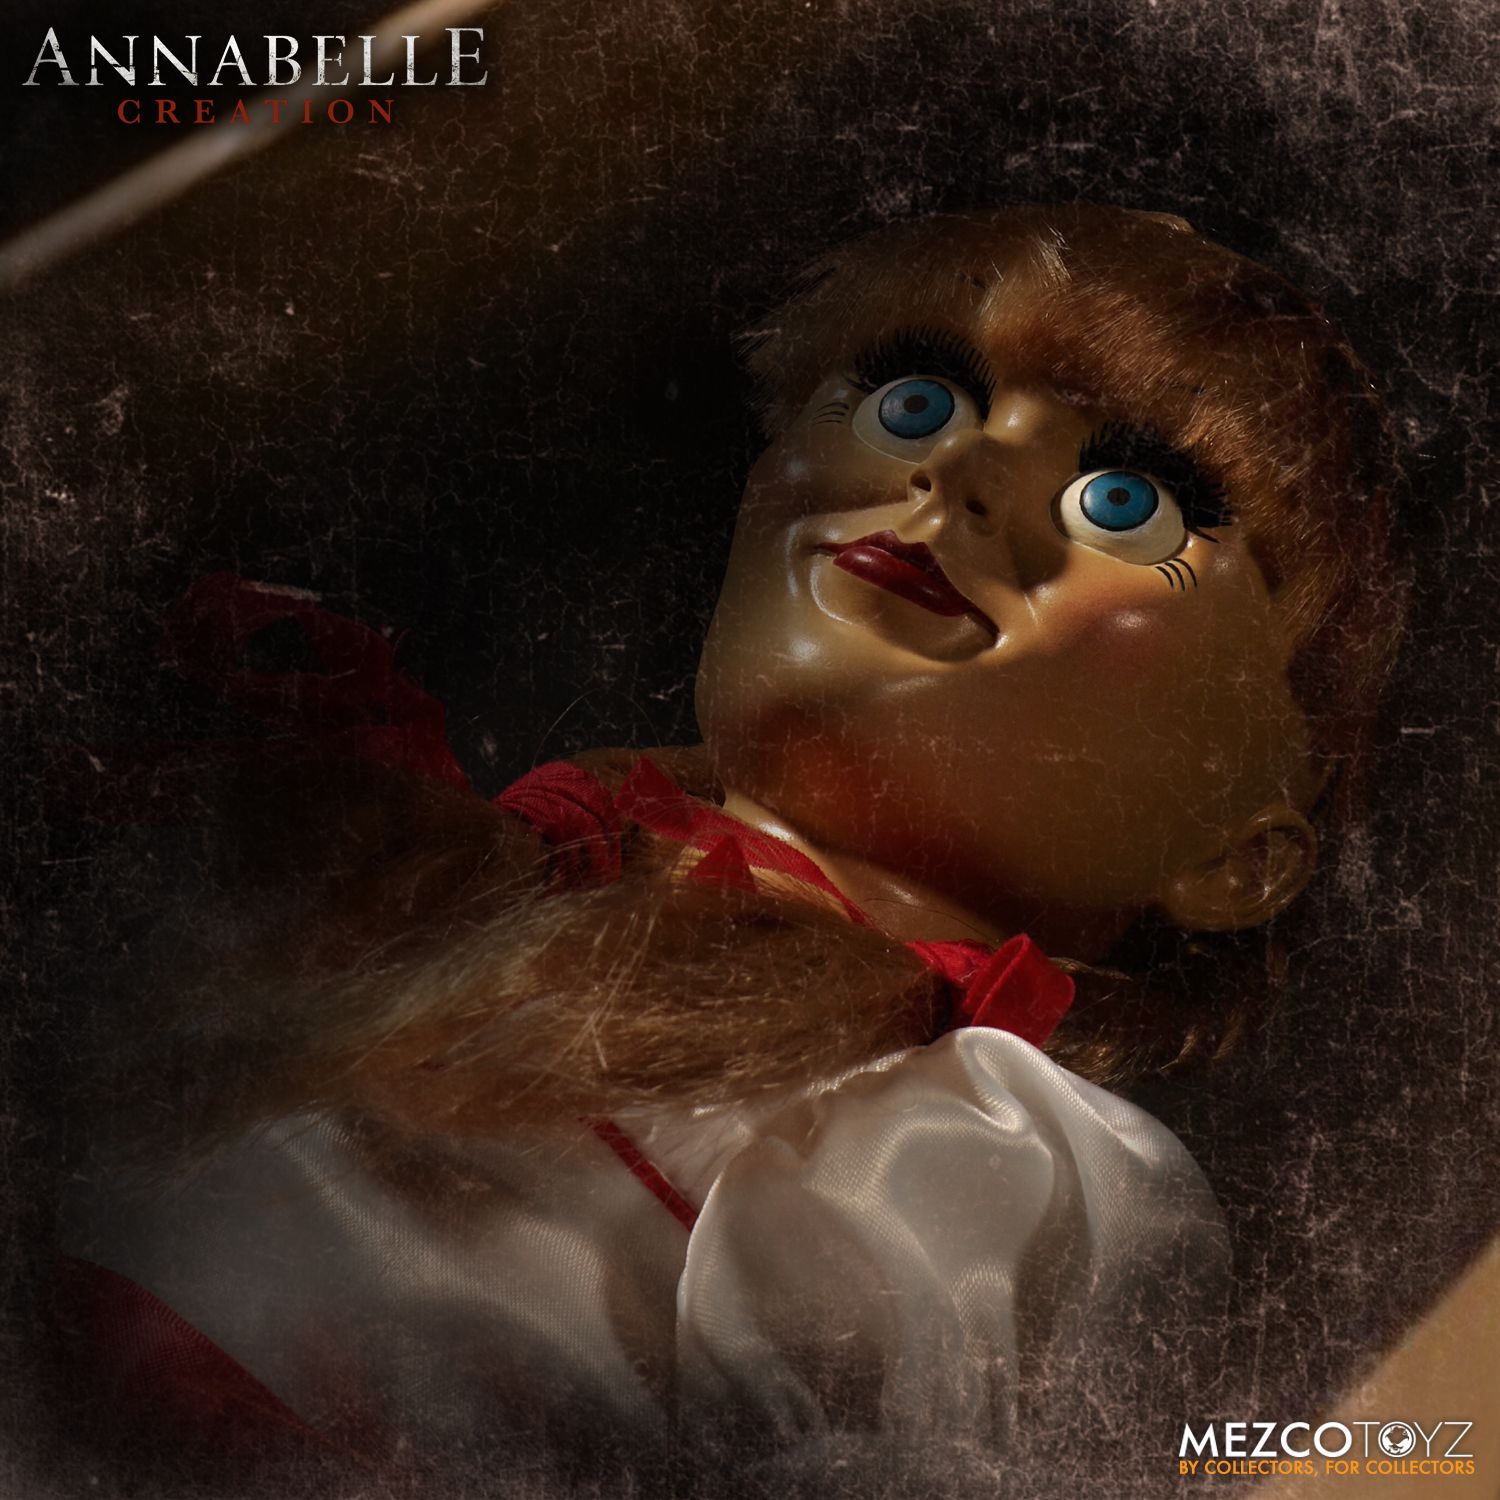 MEZCO TOYZ il evocando Annabelle 18" PROP REPLICA bambola esclusiva Regno Unito 